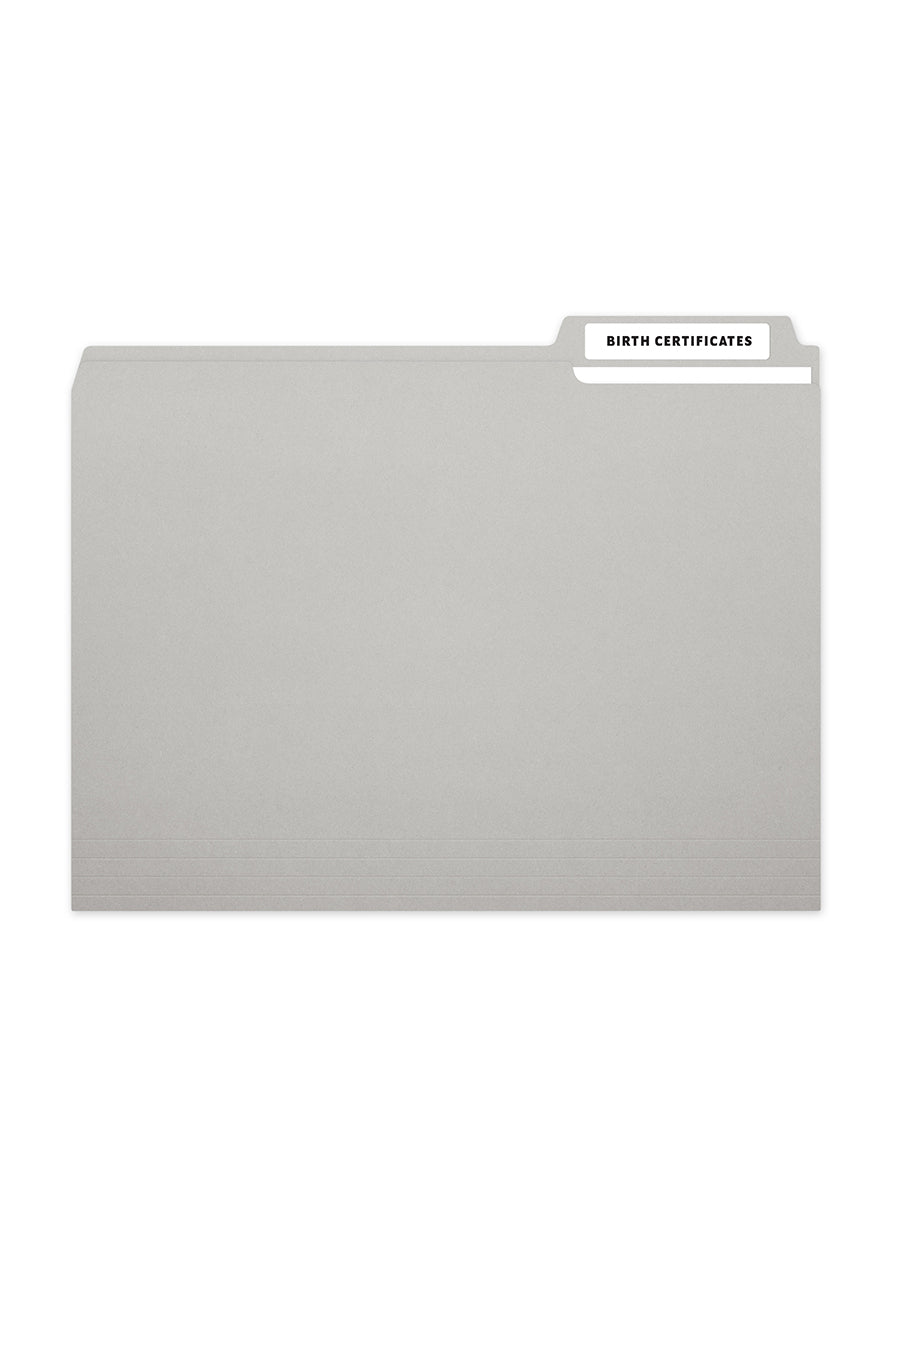 Laser/Ink Jet White File Folder Labels, 2/3" x 3-7/16", 30/Sheet, 750 Labels/Pk